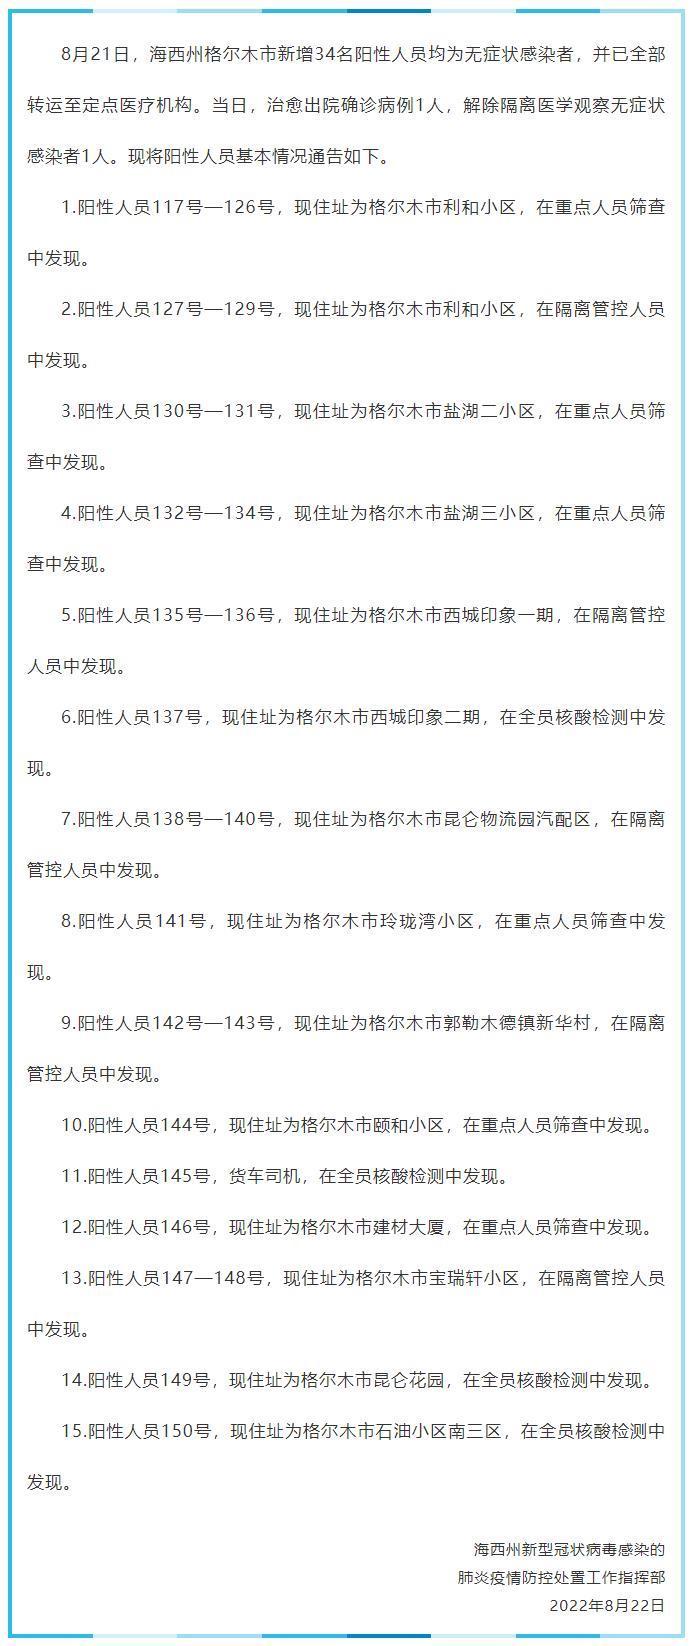 青海海西州格尔木市昨日新增34例无症状感染者